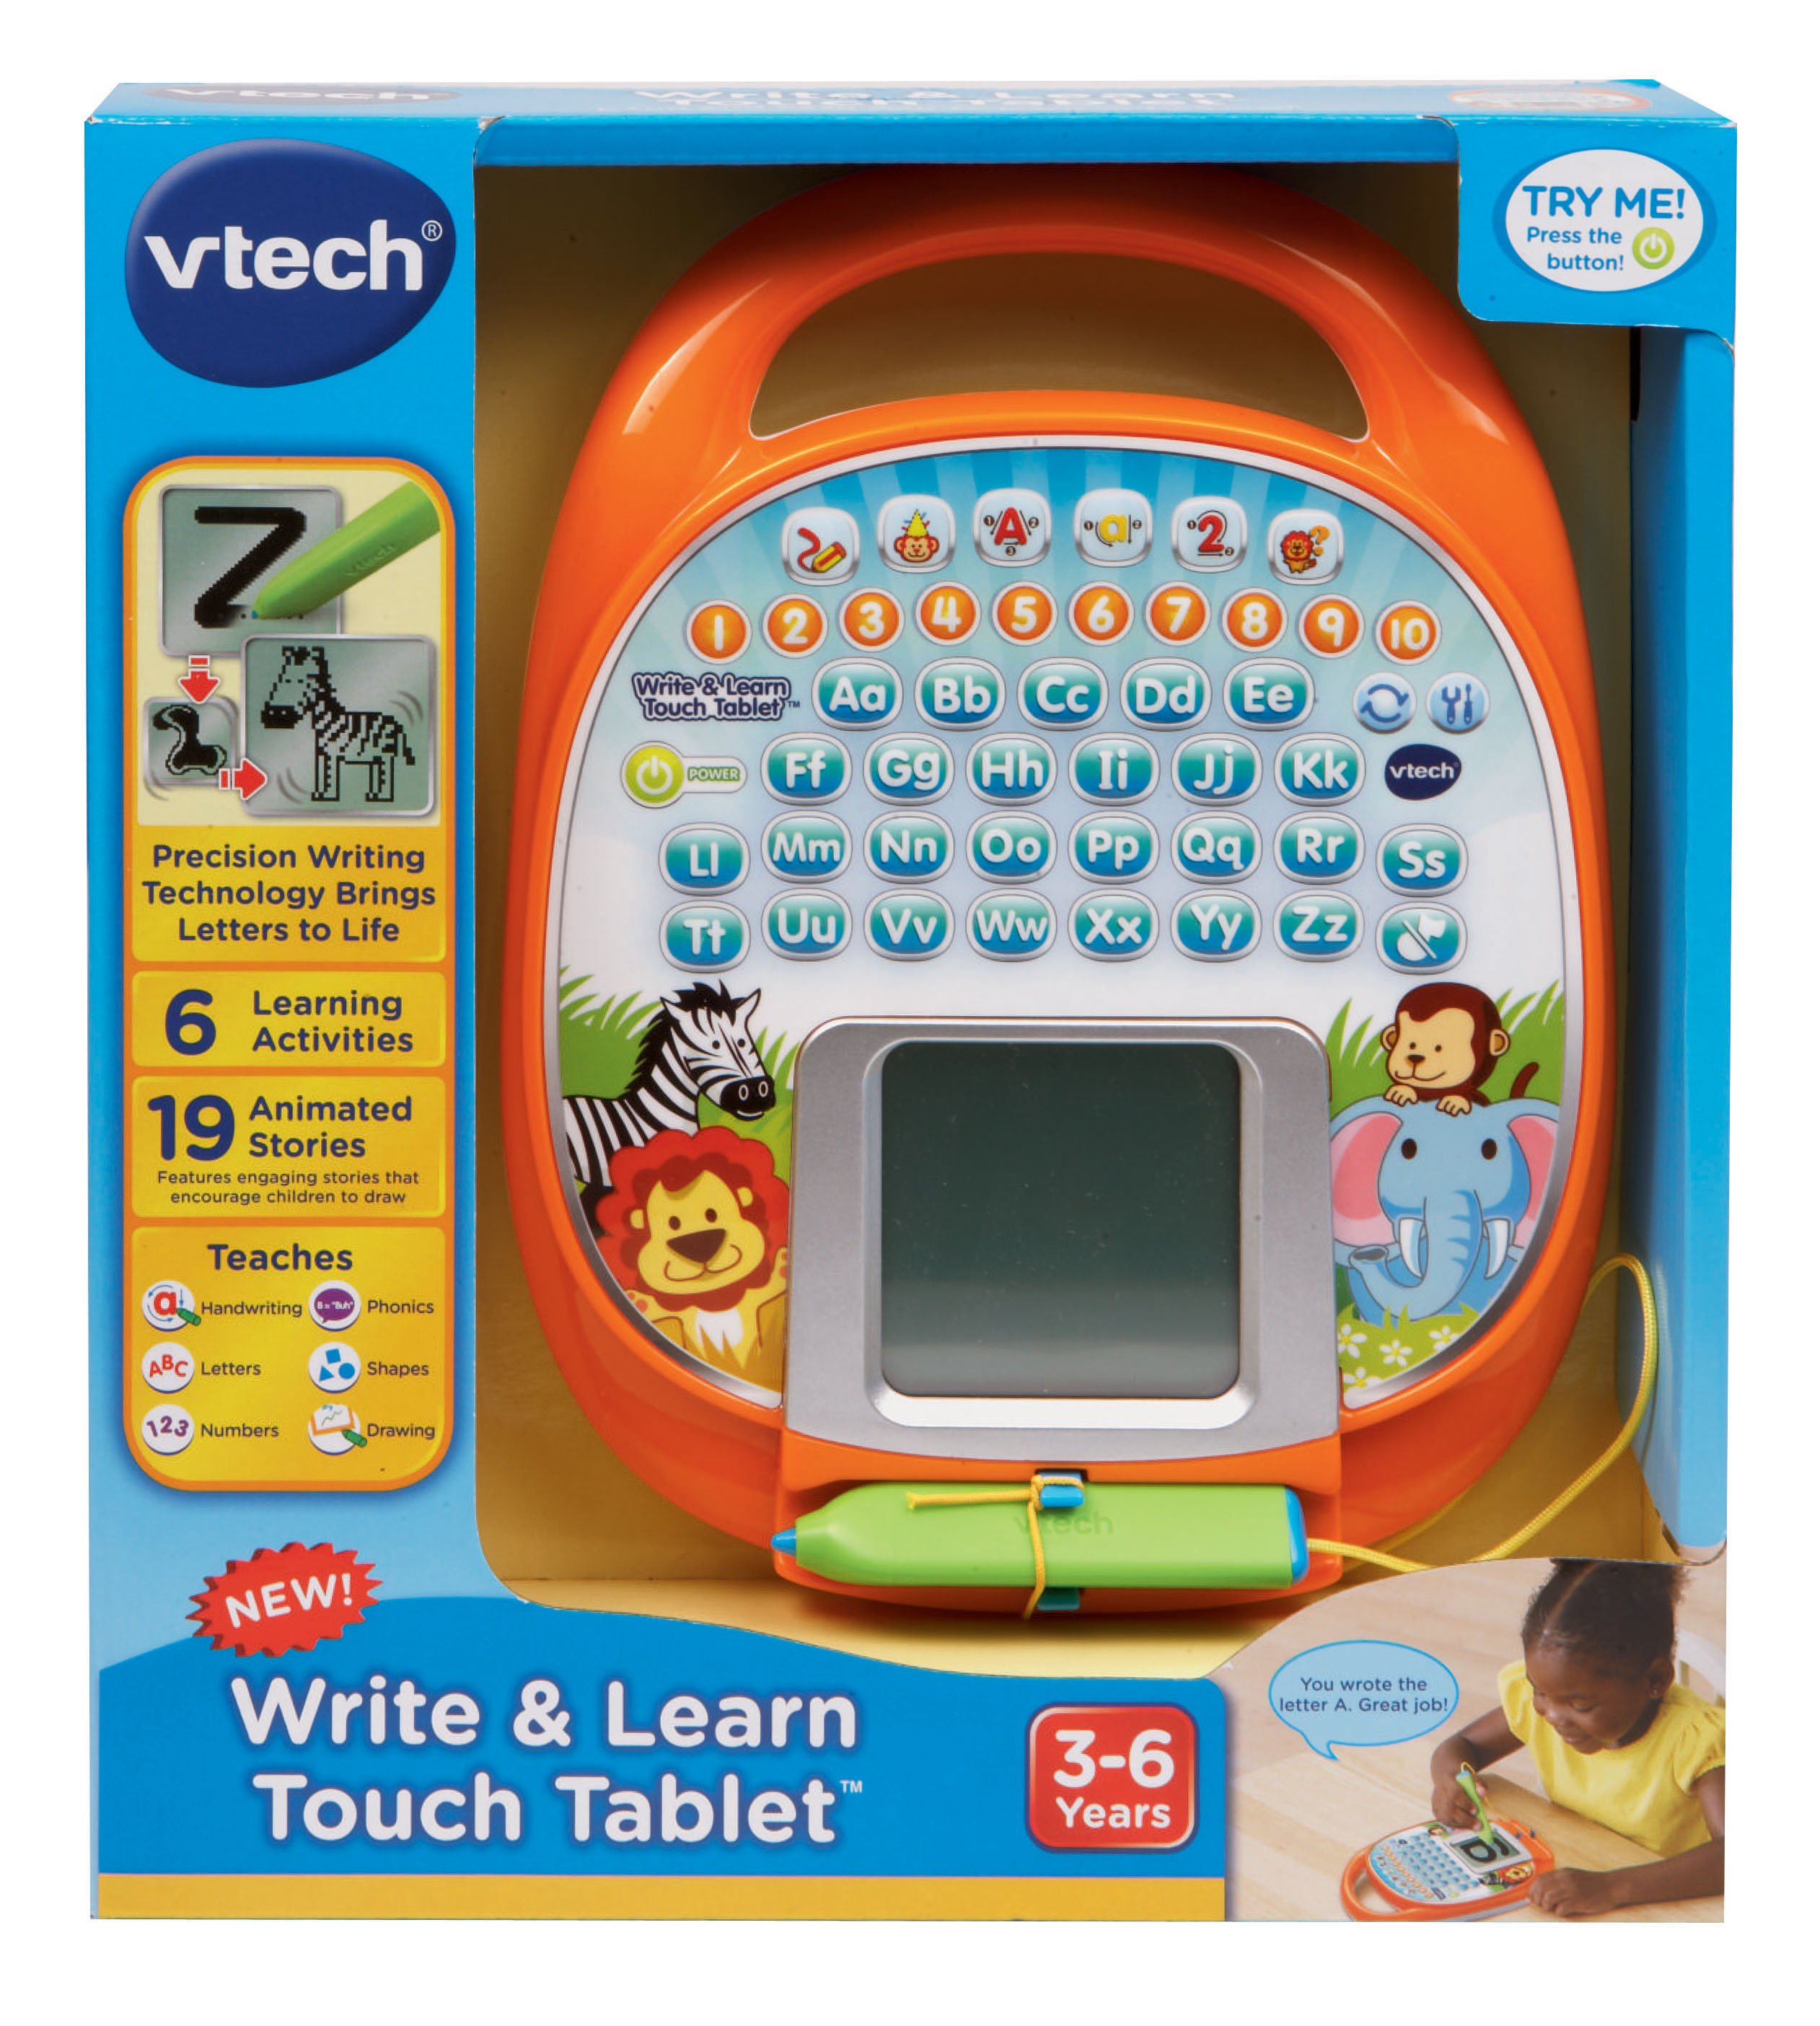 vtech tablet toy